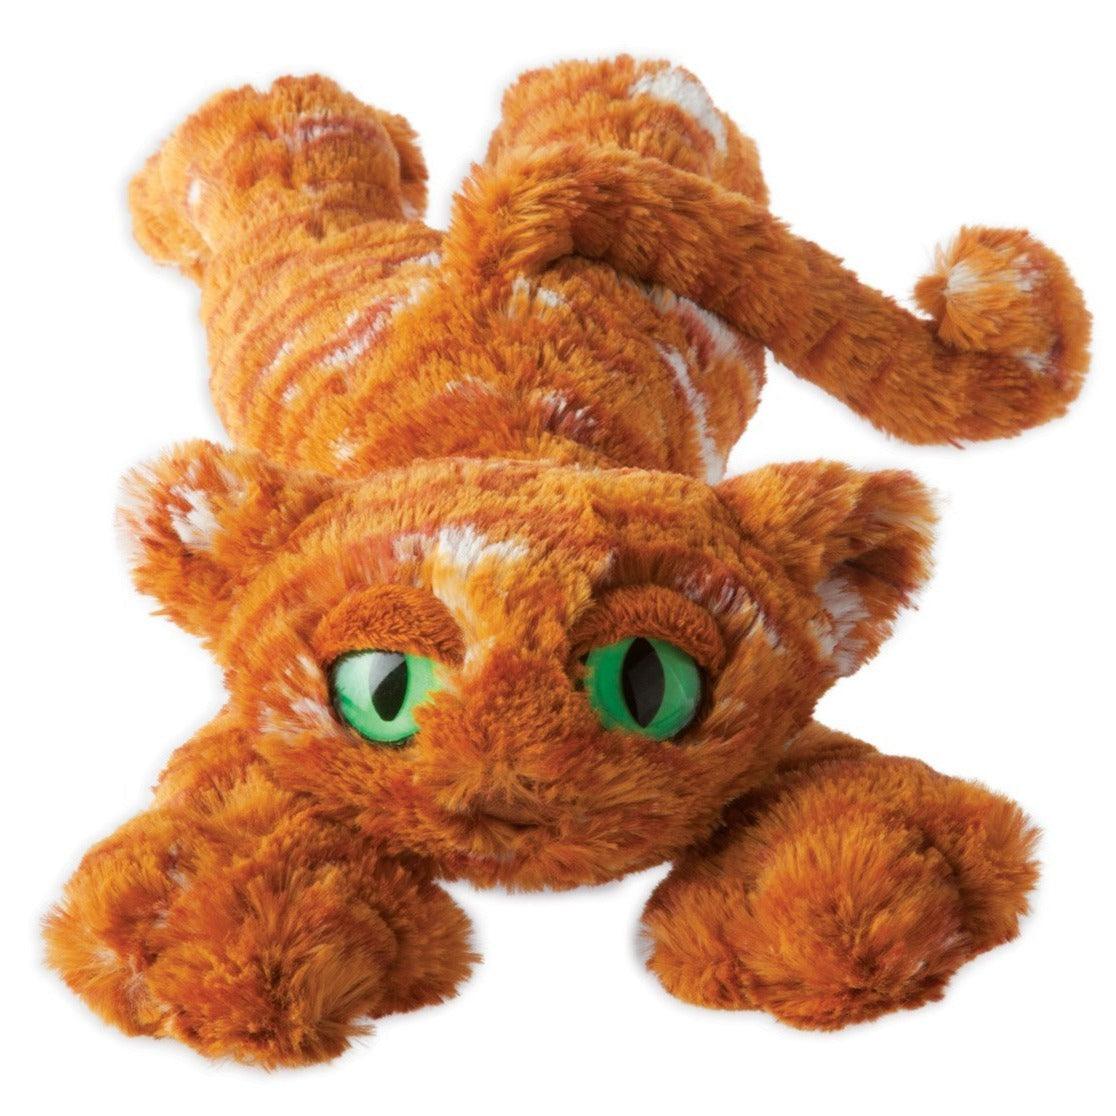 Manhattan igračka: Lanky Cat đumbir crvena mačka lukavo igračka